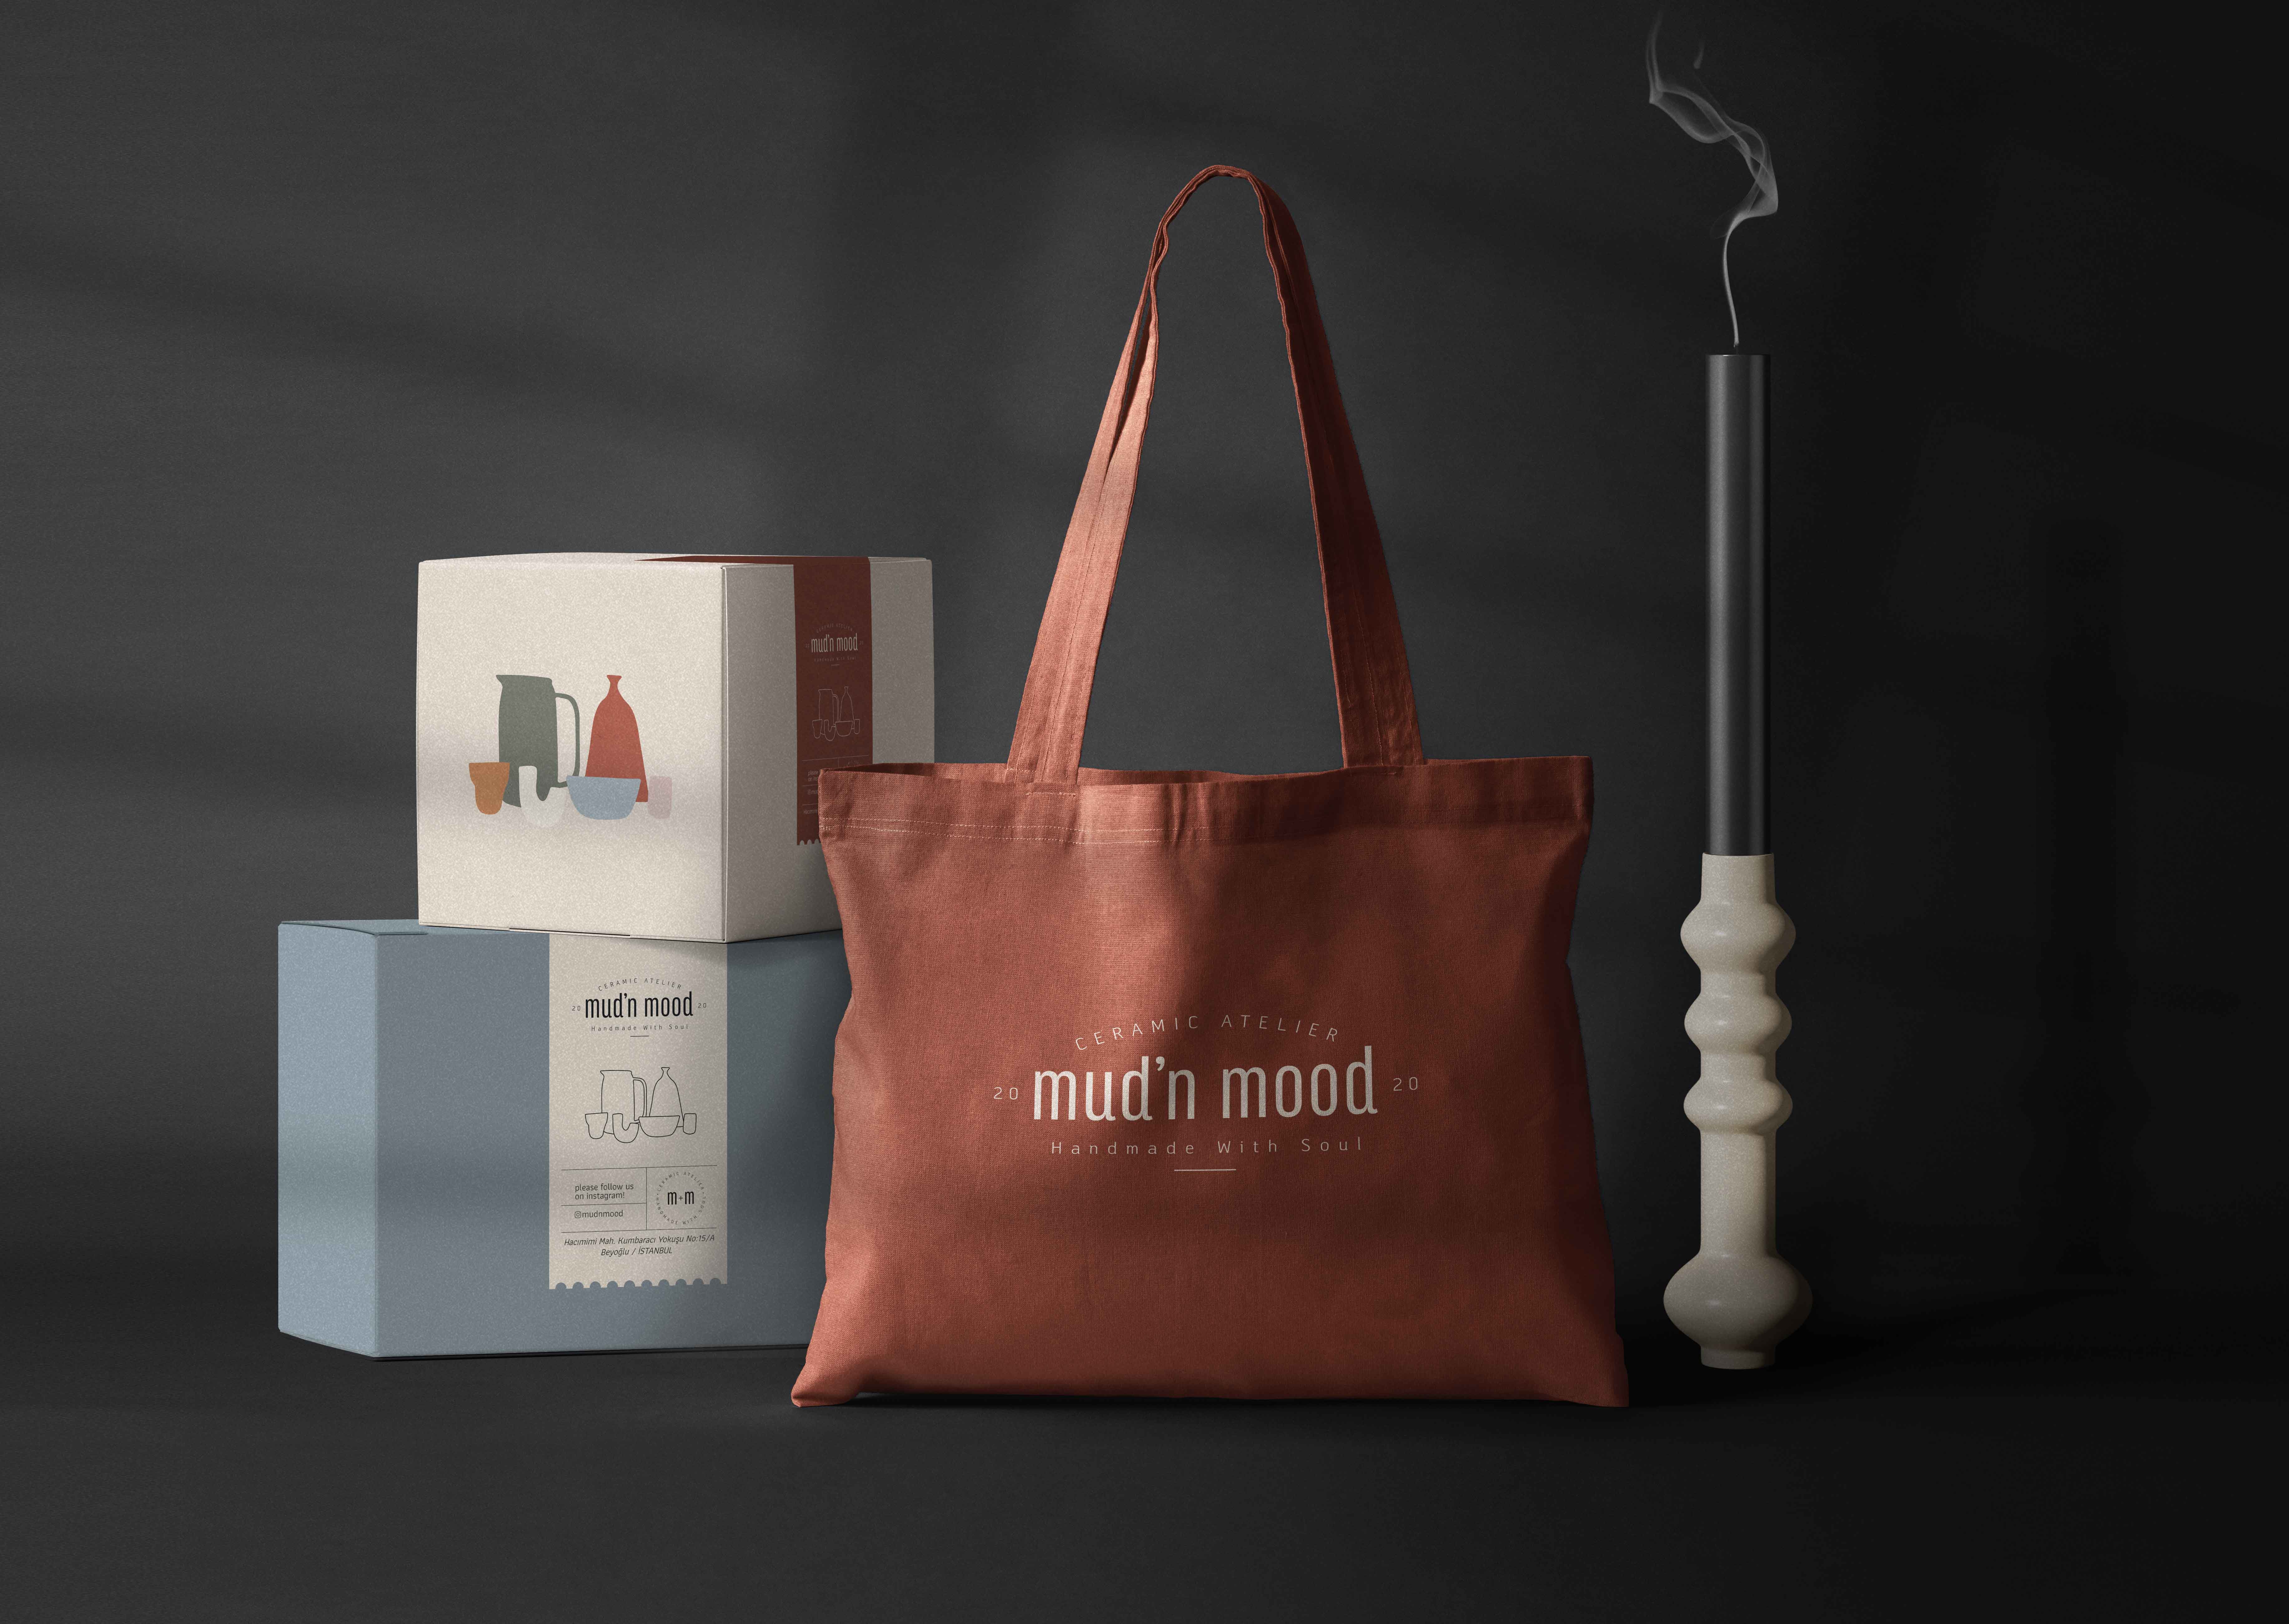 Mud’n Mood Ceramic Atelier Branding and Packaging Design